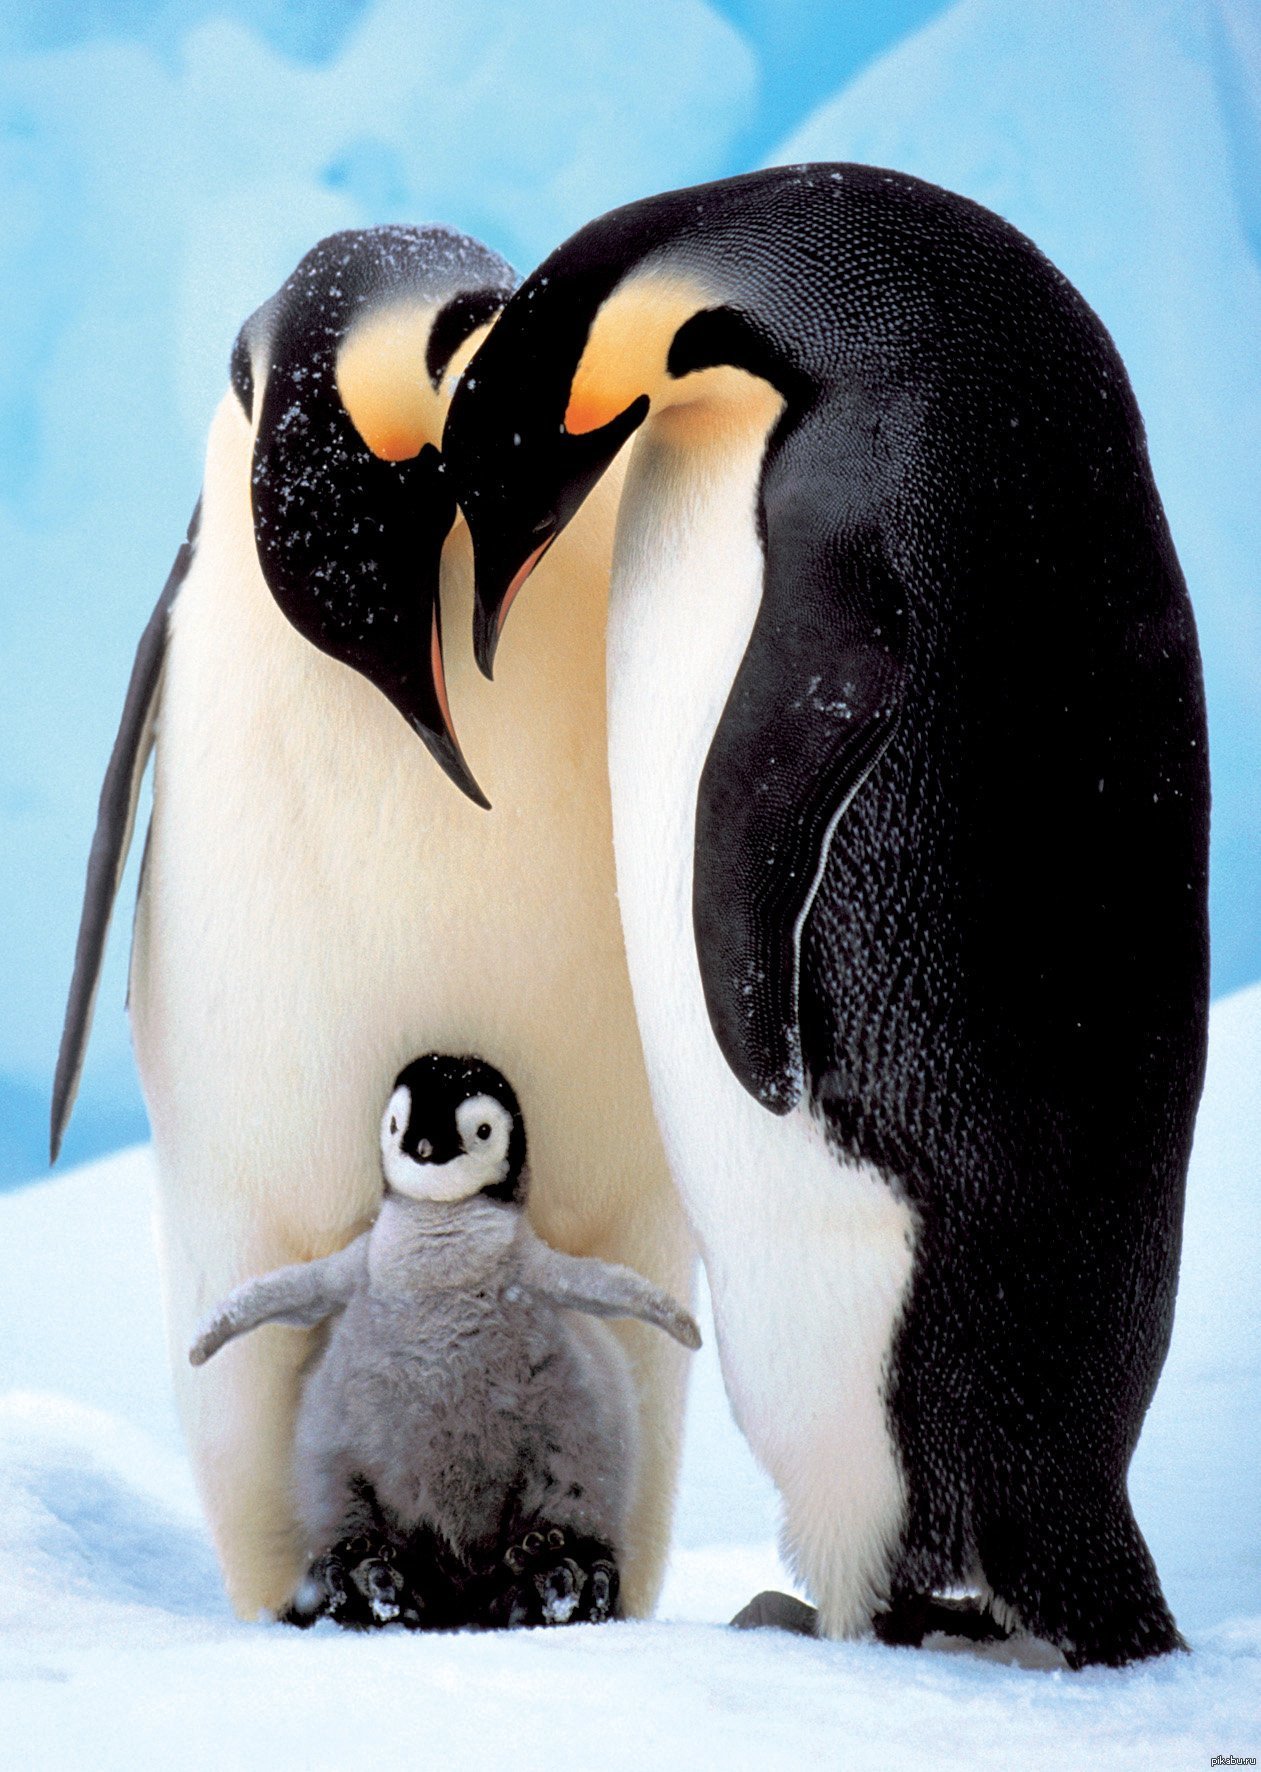 Пингвины моей мамы дата. Пингвины в Антарктиде. Влюбленные пингвины. Пара пингвинов. Влюбленные пингвинчики.